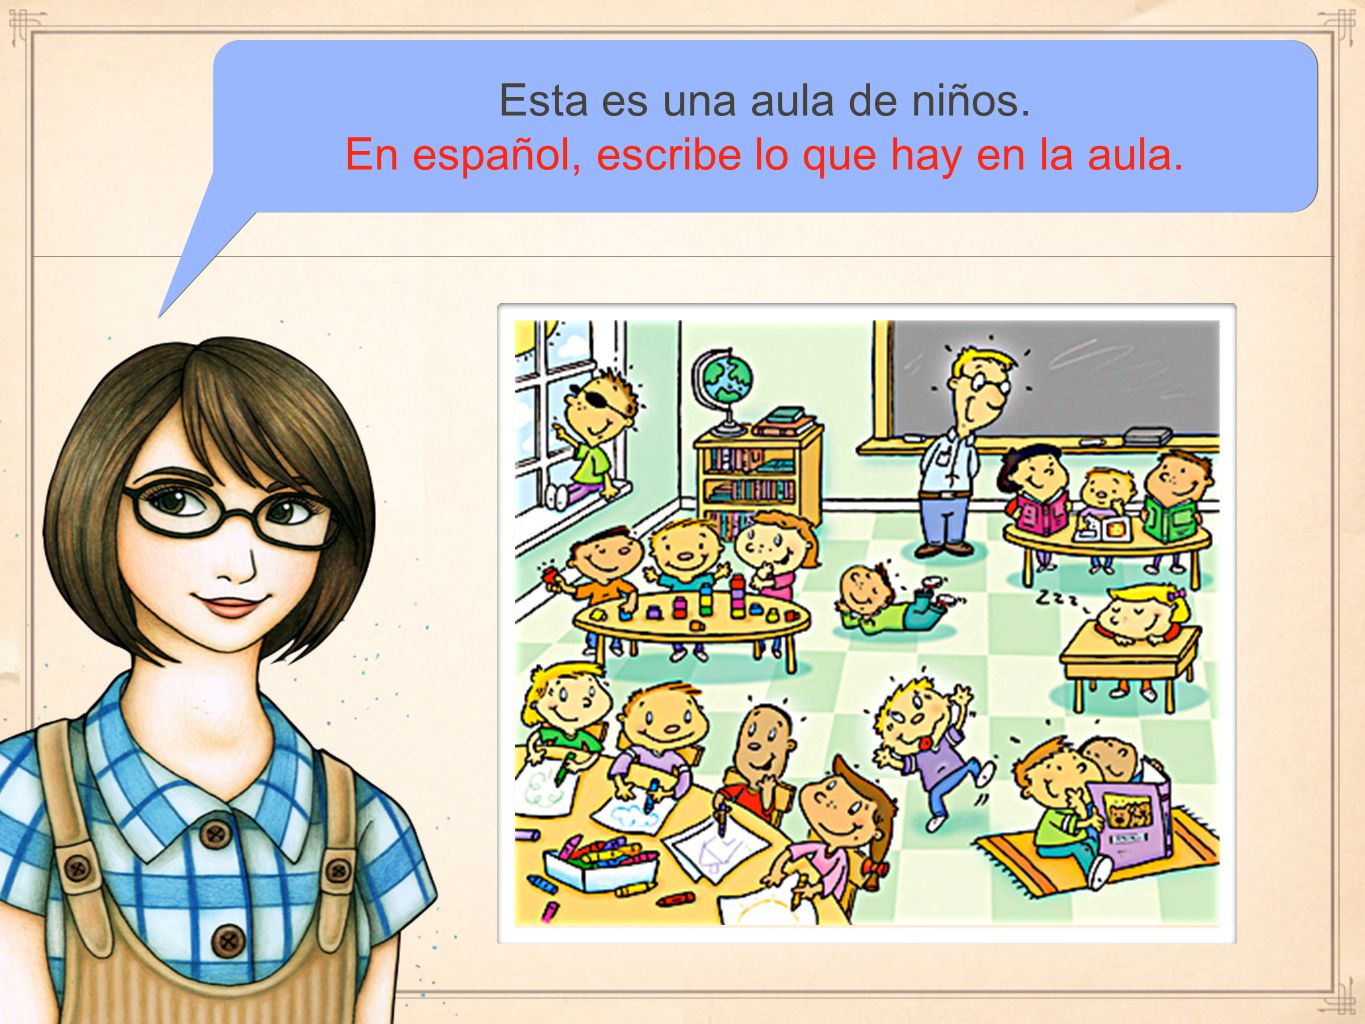 Esta es una aula de niños. En español, escribe lo que hay en la aula.